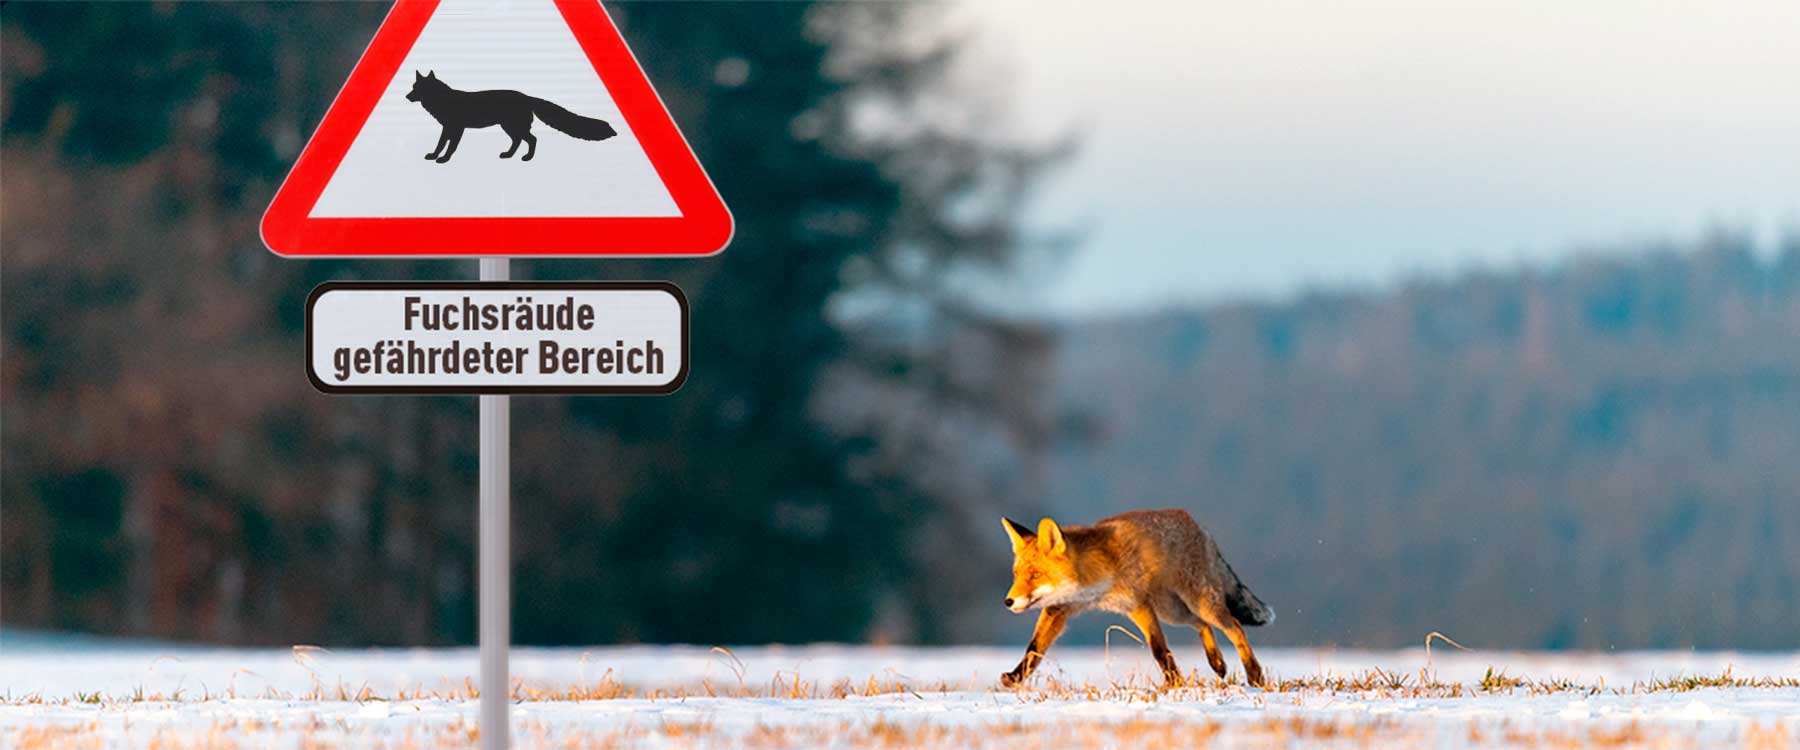 Fuchsräude-Warnschild mit Fuchs im Hintergrund.